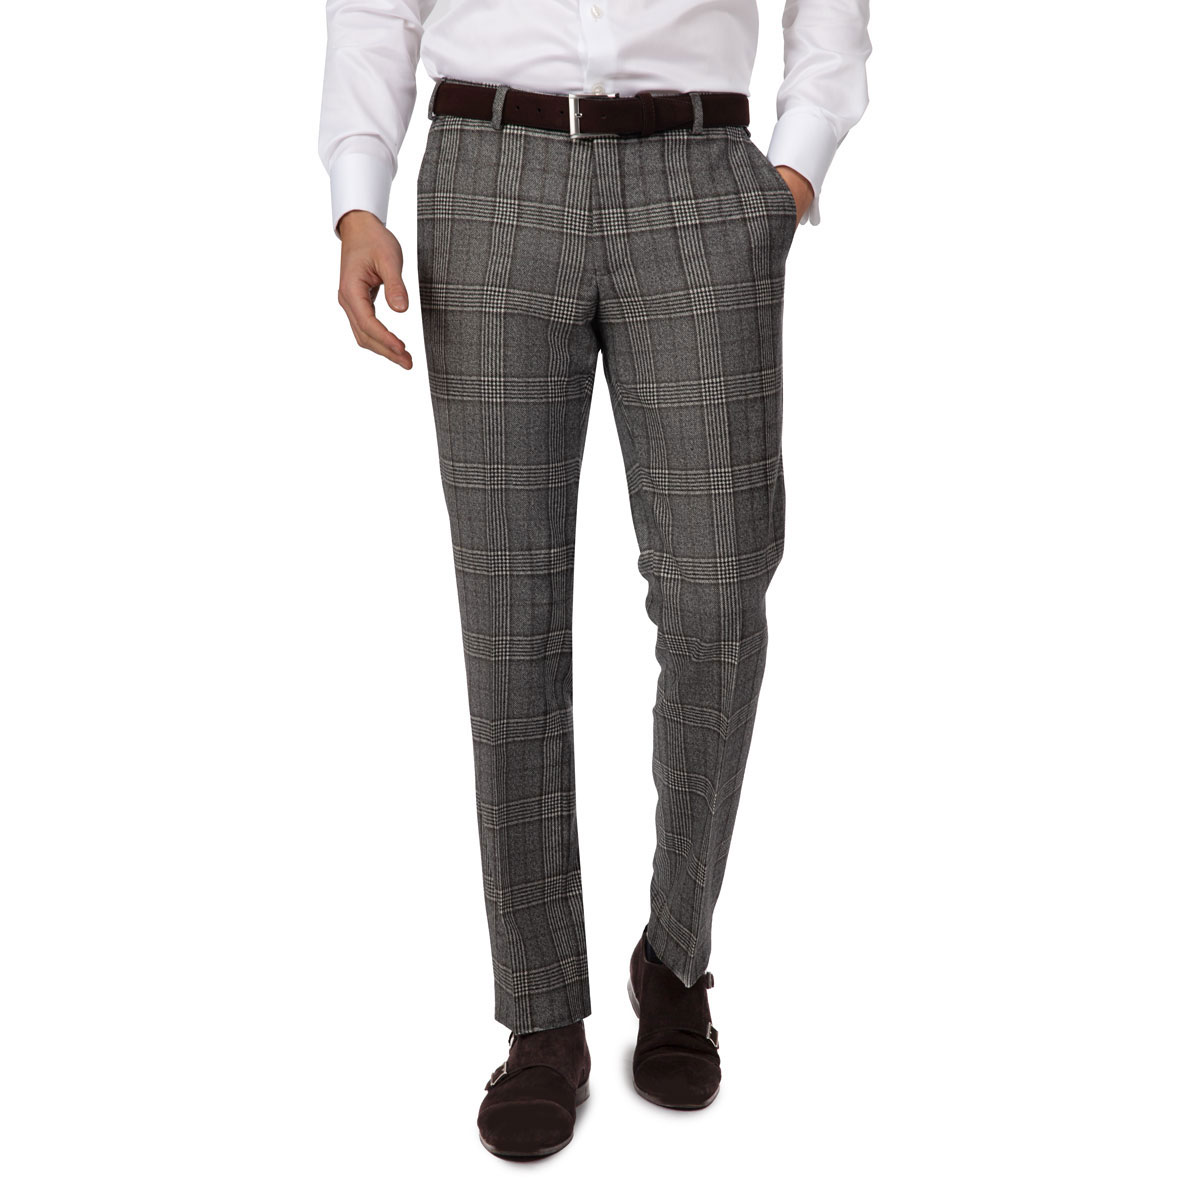 Anzughose ohne Bundfalte in grau und braun